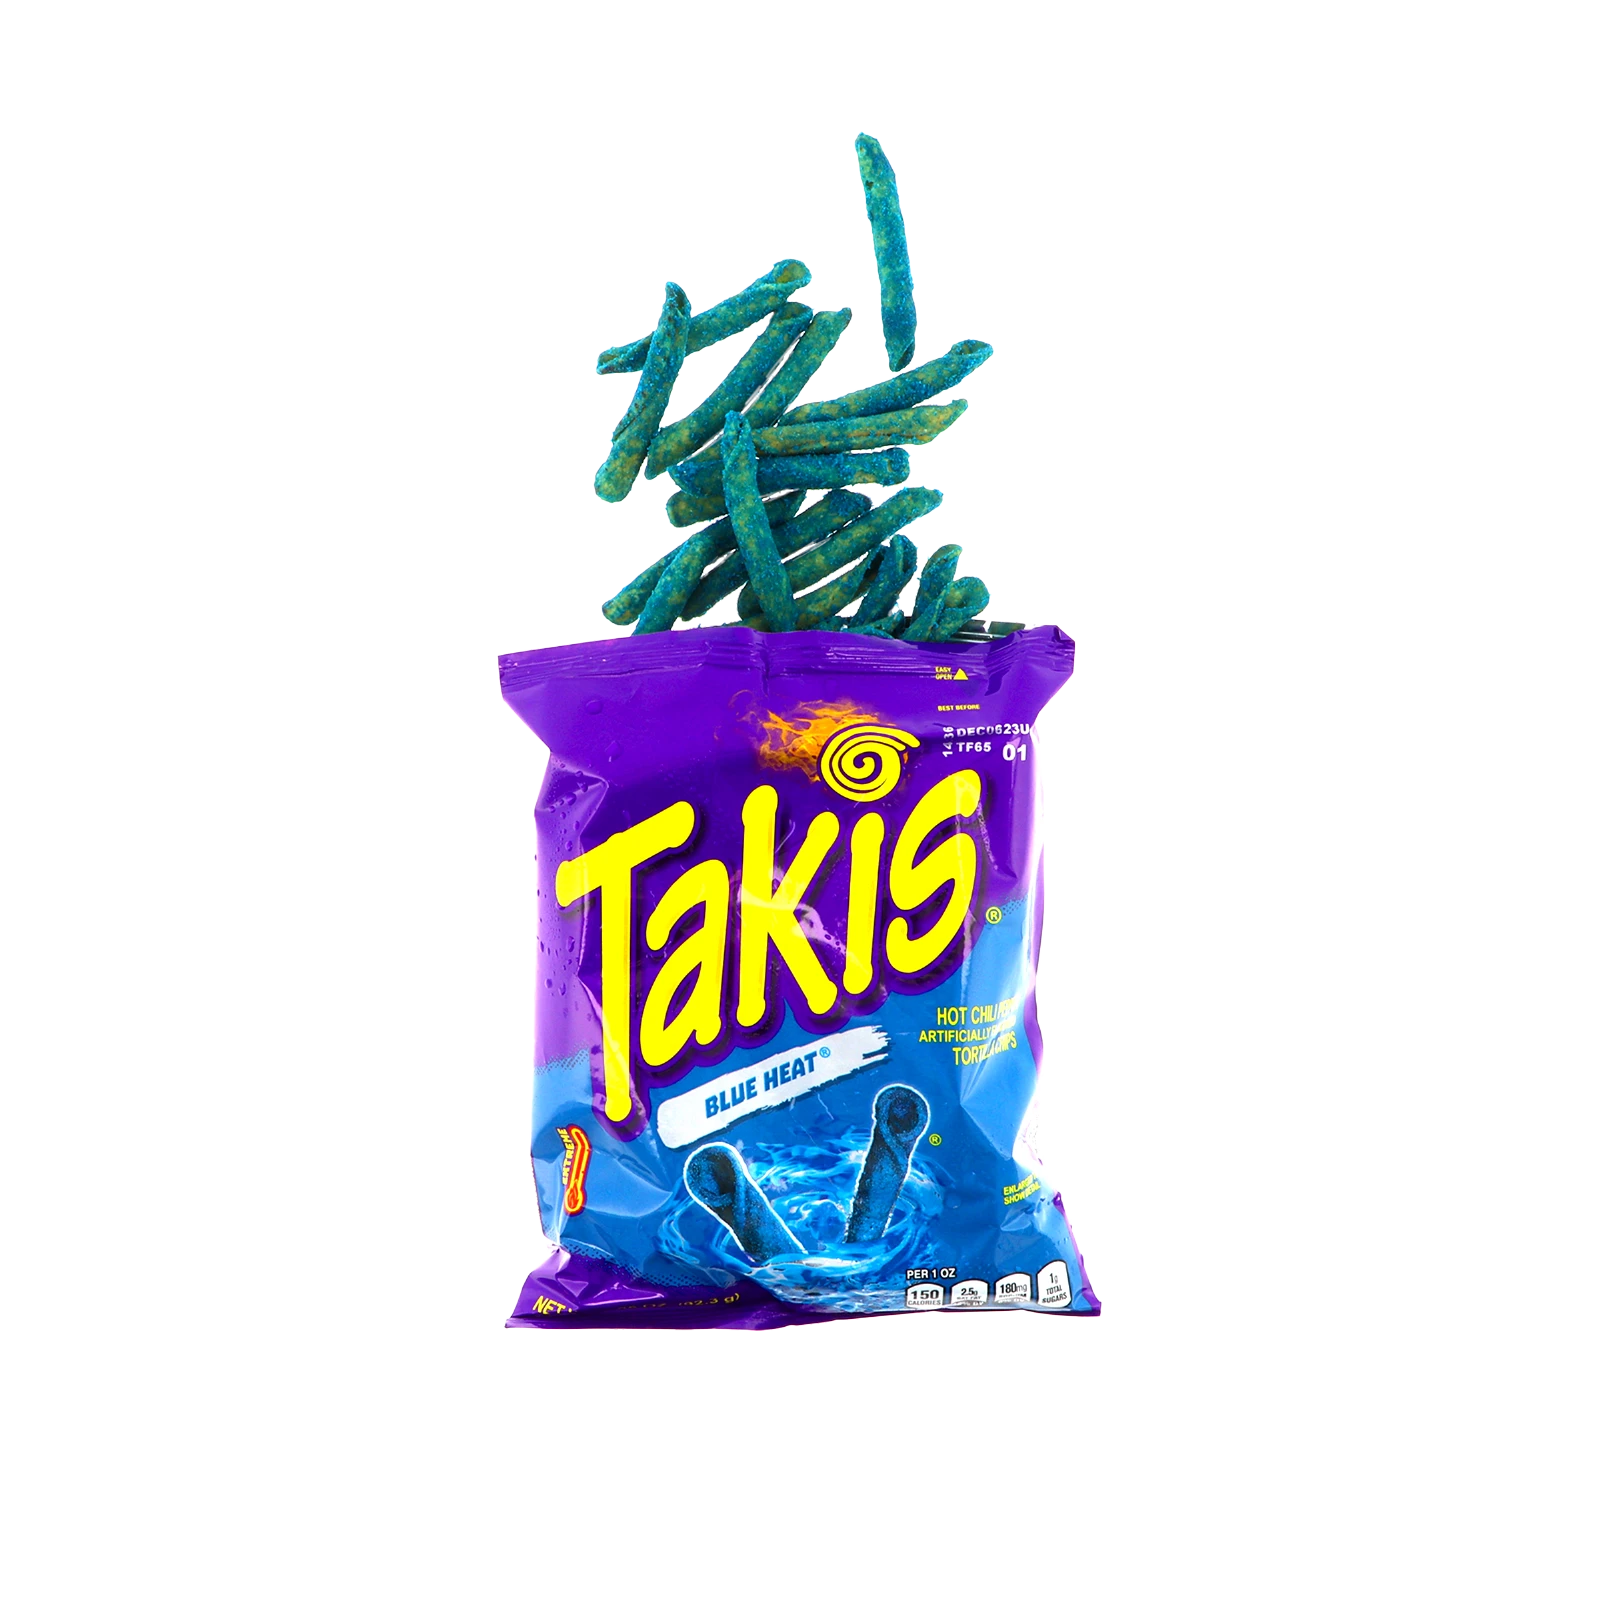 Takis - Blue Heat - 92,3 g | Chili & Lime - Special Edition Tortilla Chips günstig online kaufen - Hookain Snack-Onlineshop2